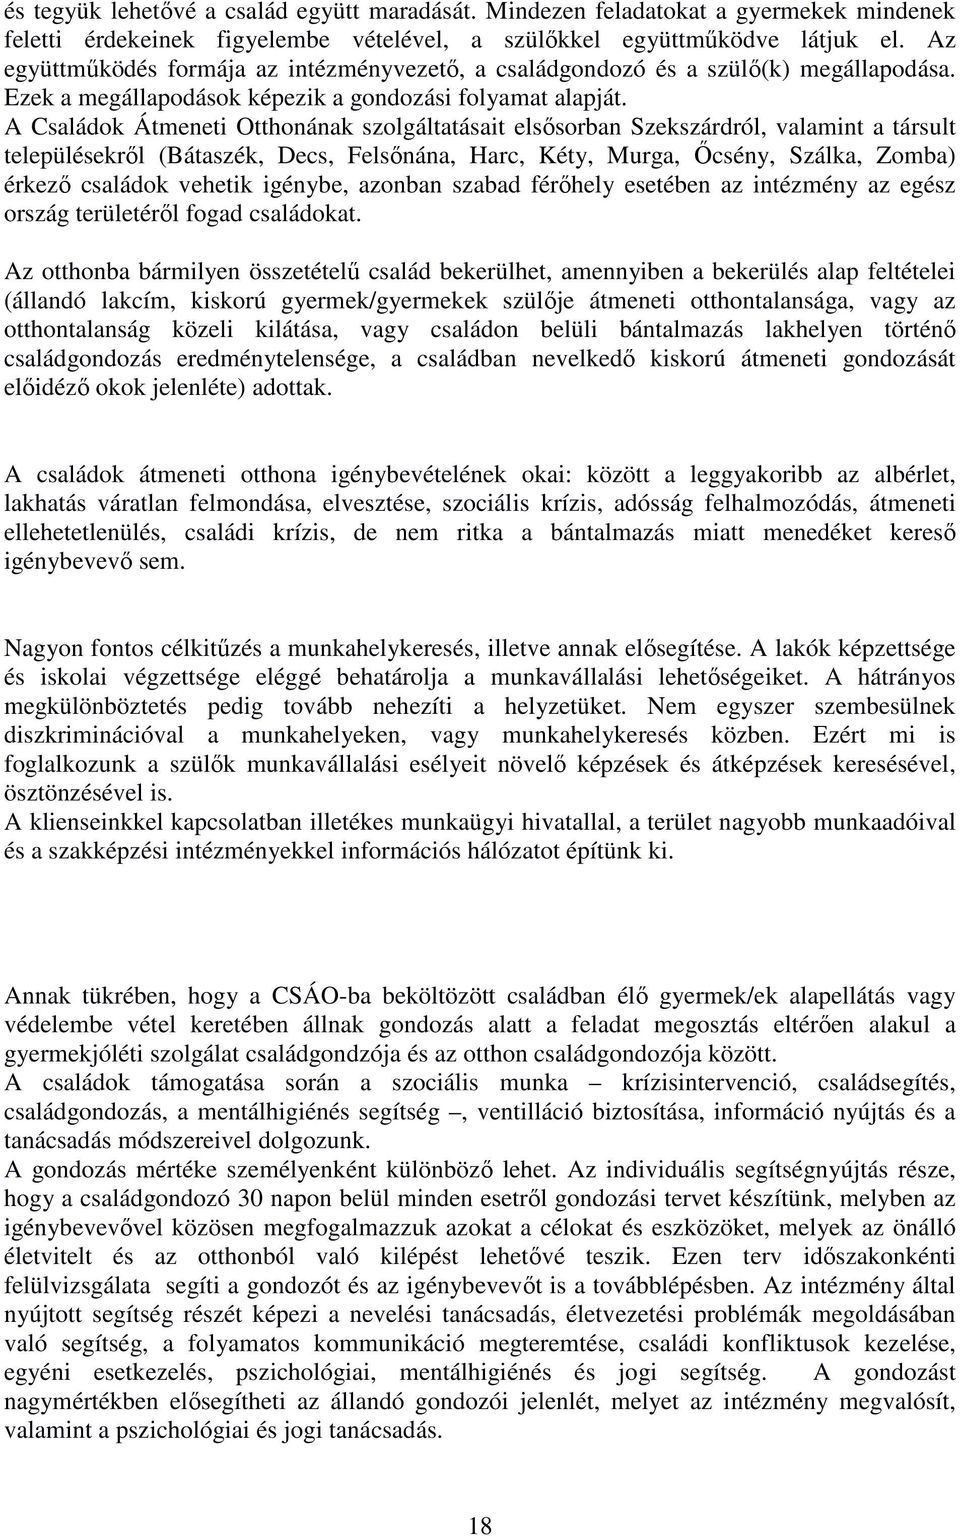 A Családok Átmeneti Otthonának szolgáltatásait elsısorban Szekszárdról, valamint a társult településekrıl (Bátaszék, Decs, Felsınána, Harc, Kéty, Murga, İcsény, Szálka, Zomba) érkezı családok vehetik